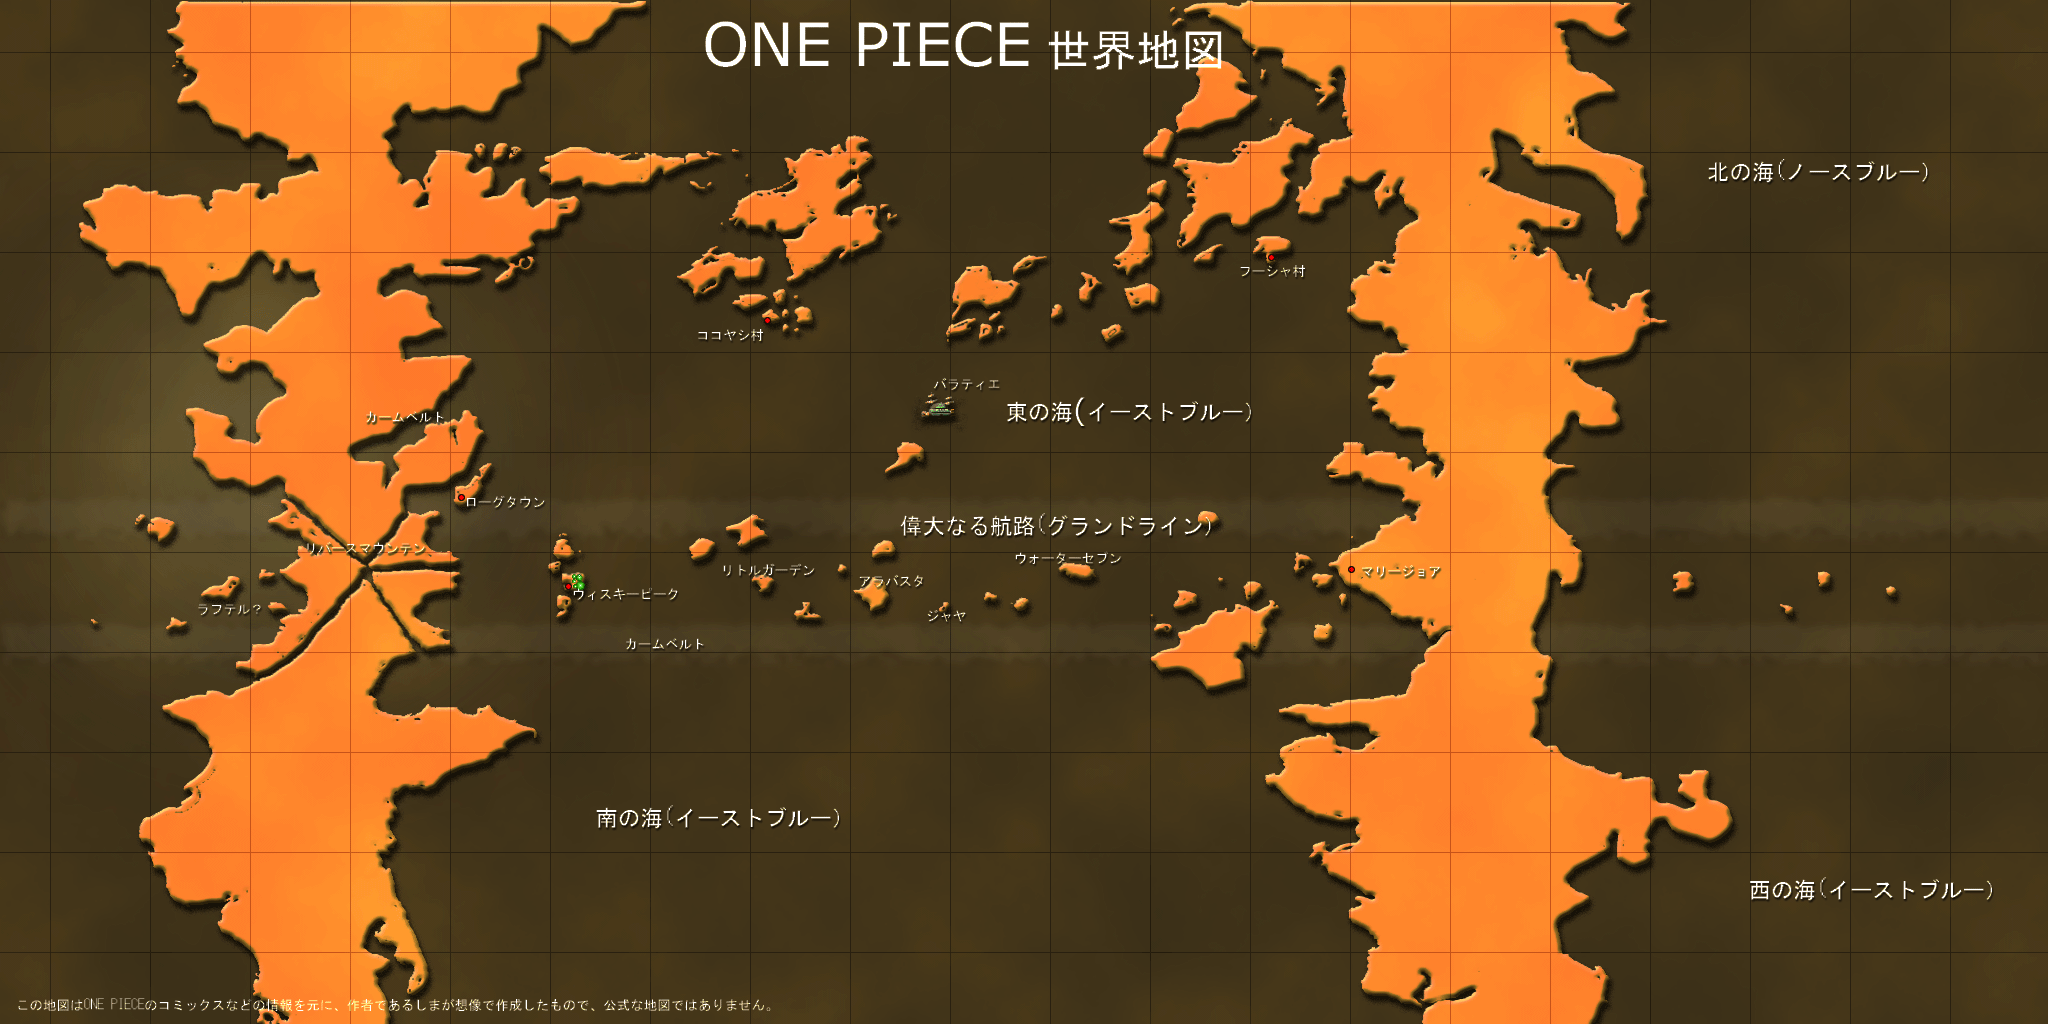 One Piece 世界地図 One Pieceの世界地図を作ろう